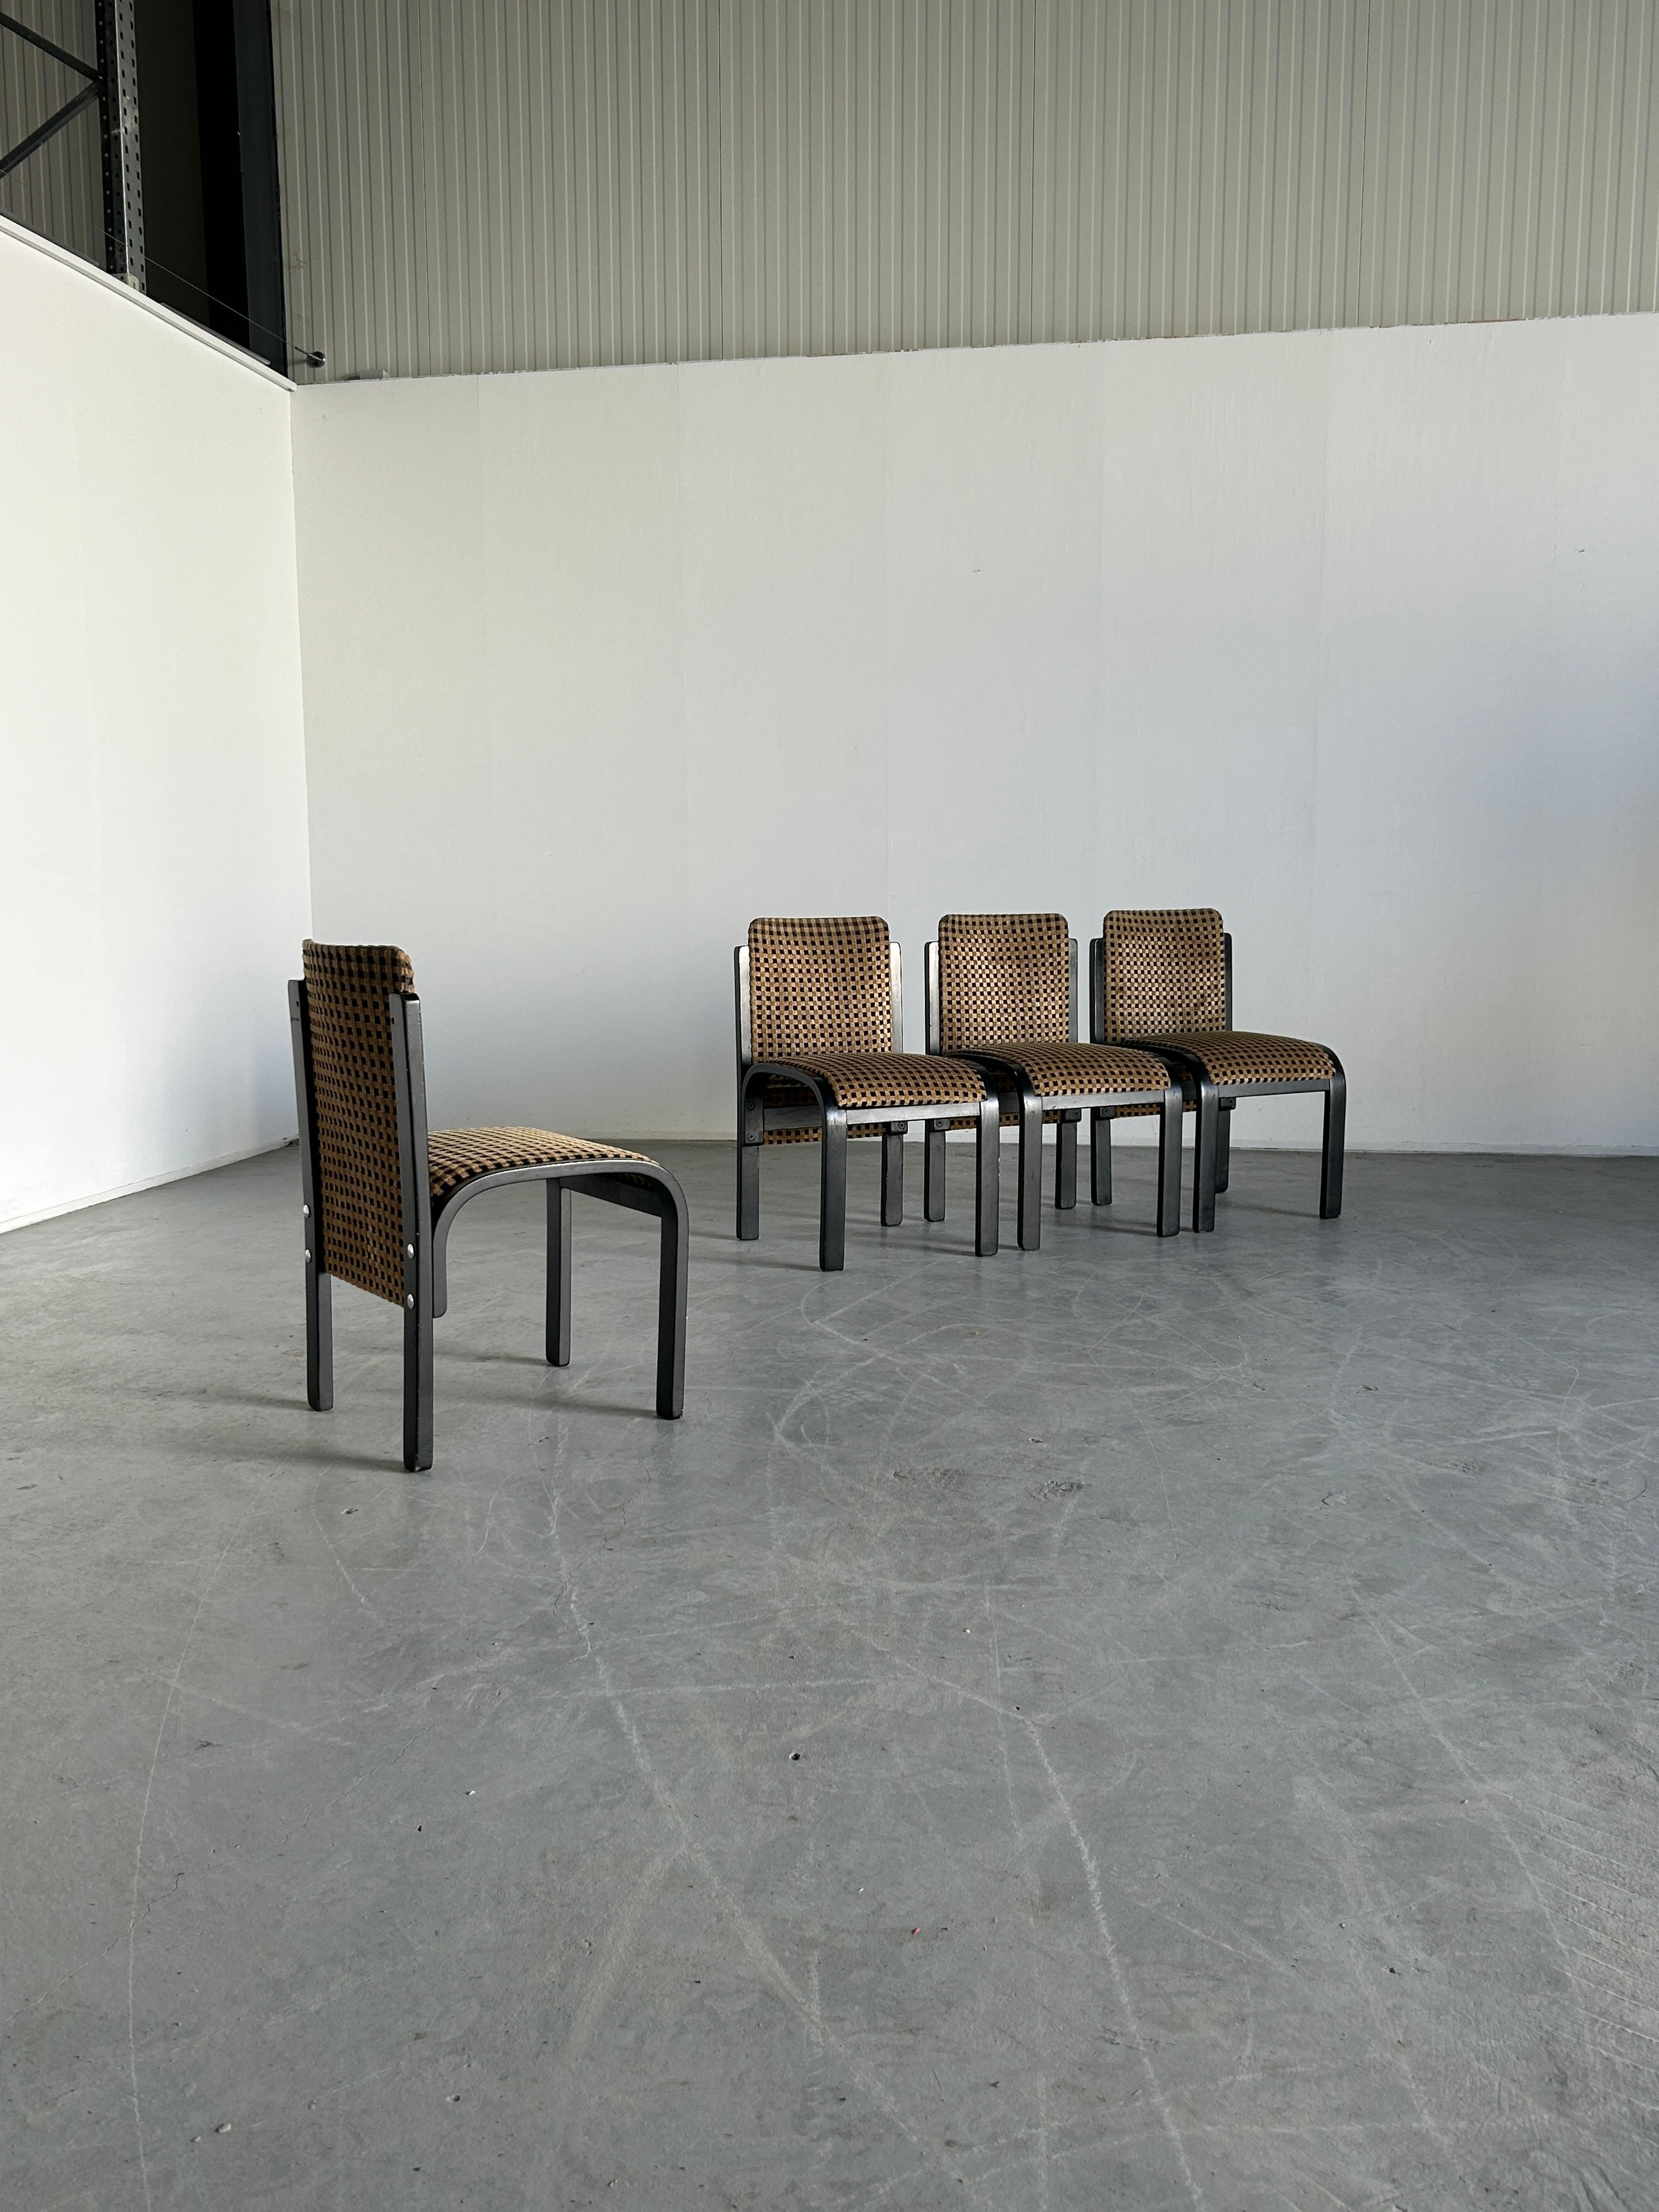 Un ensemble de quatre superbes chaises sculpturales postmodernes italiennes vintage, en bois courbé laqué noir avec quincaillerie chromée, velours original à motifs géométriques.
Production italienne inconnue, fin des années 1970 ou début des années